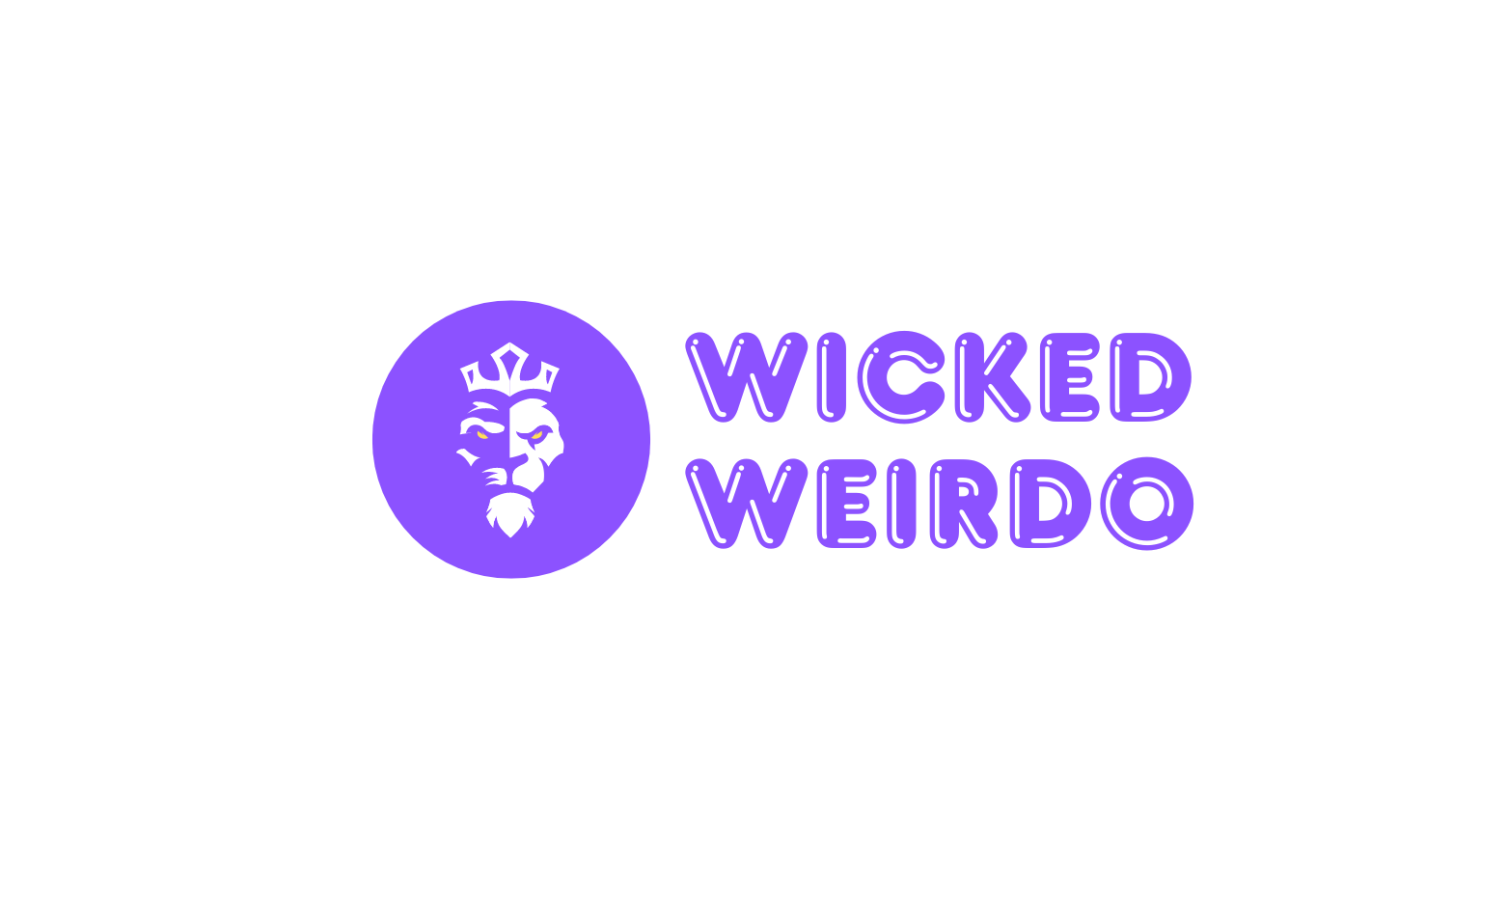 WickedWeirdo.com